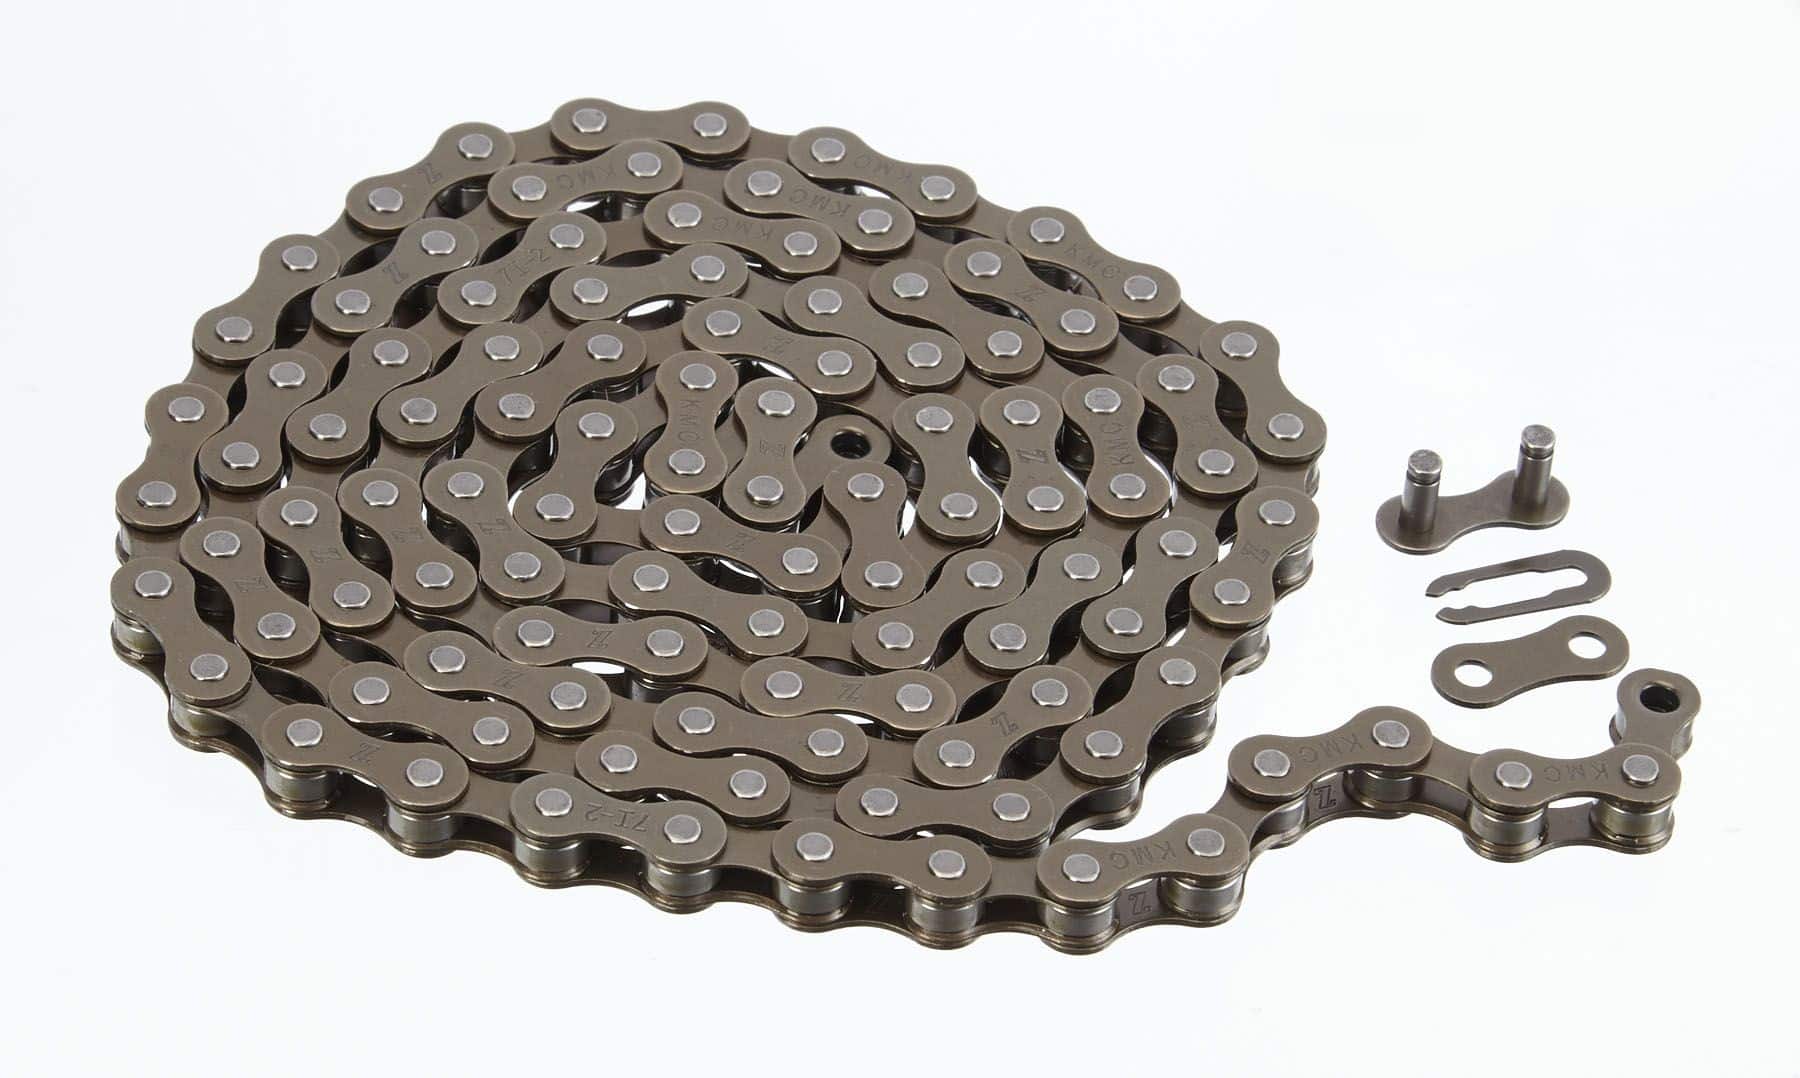 Chaîne de vélo Supercycle avec pince à ressort, choix varié